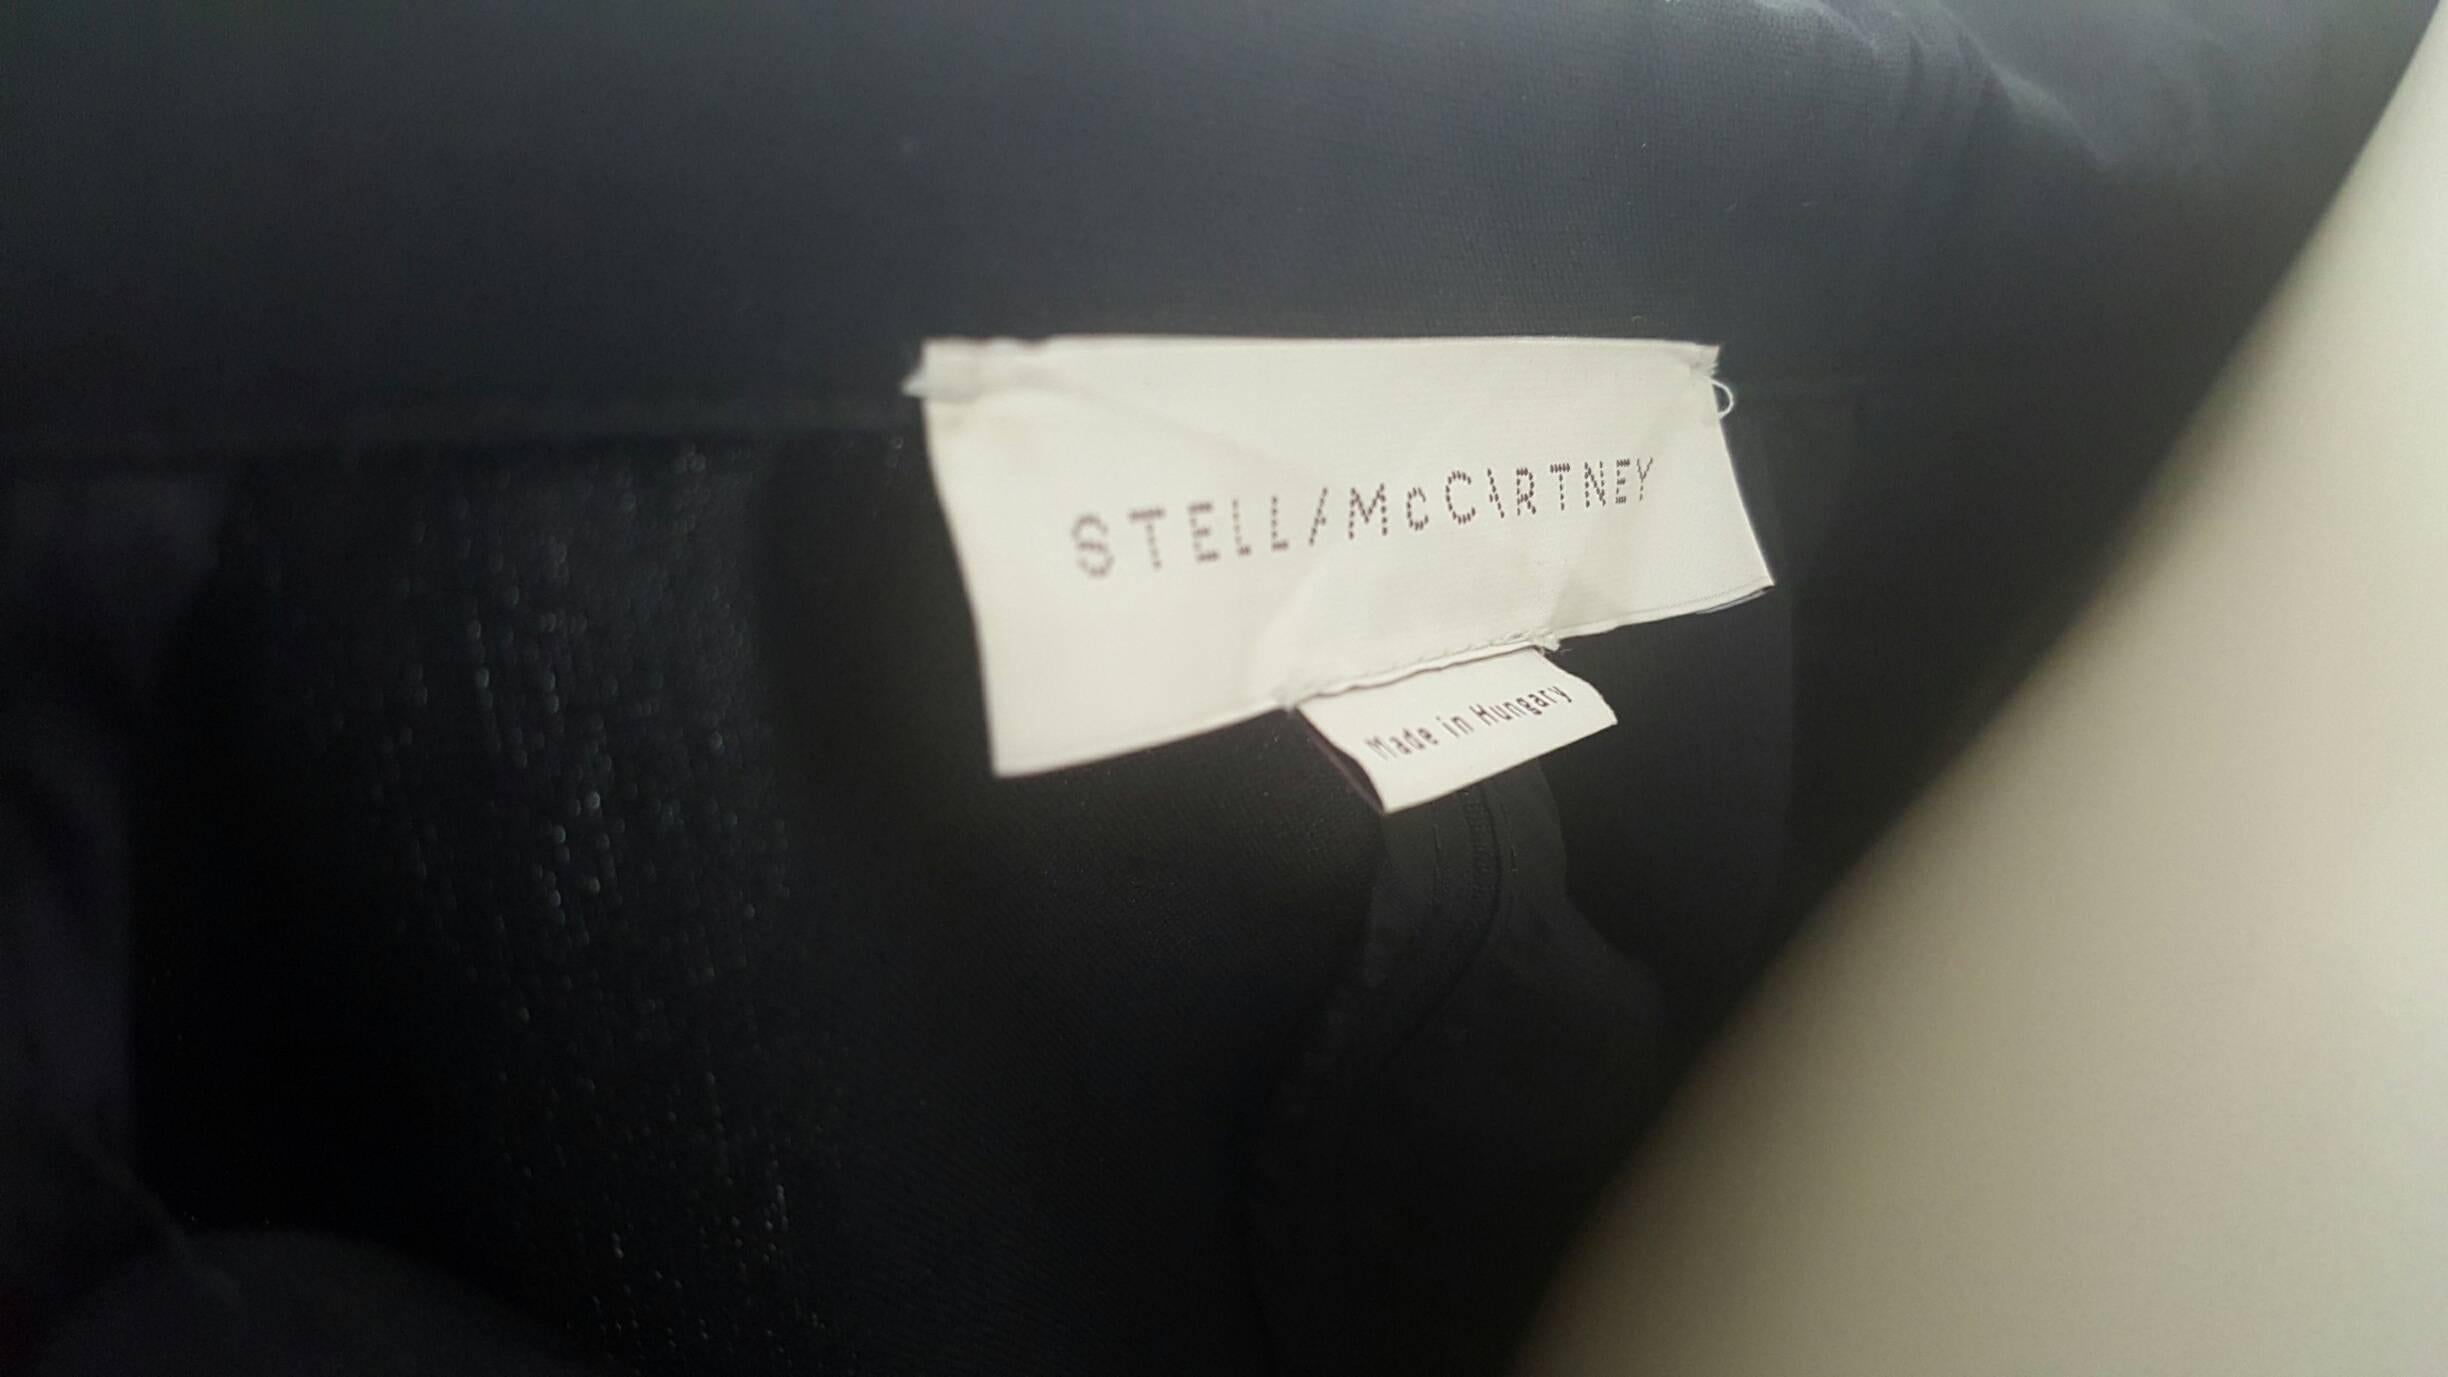 Women's 2000s Stella McCartney black jumpsuit - all in one